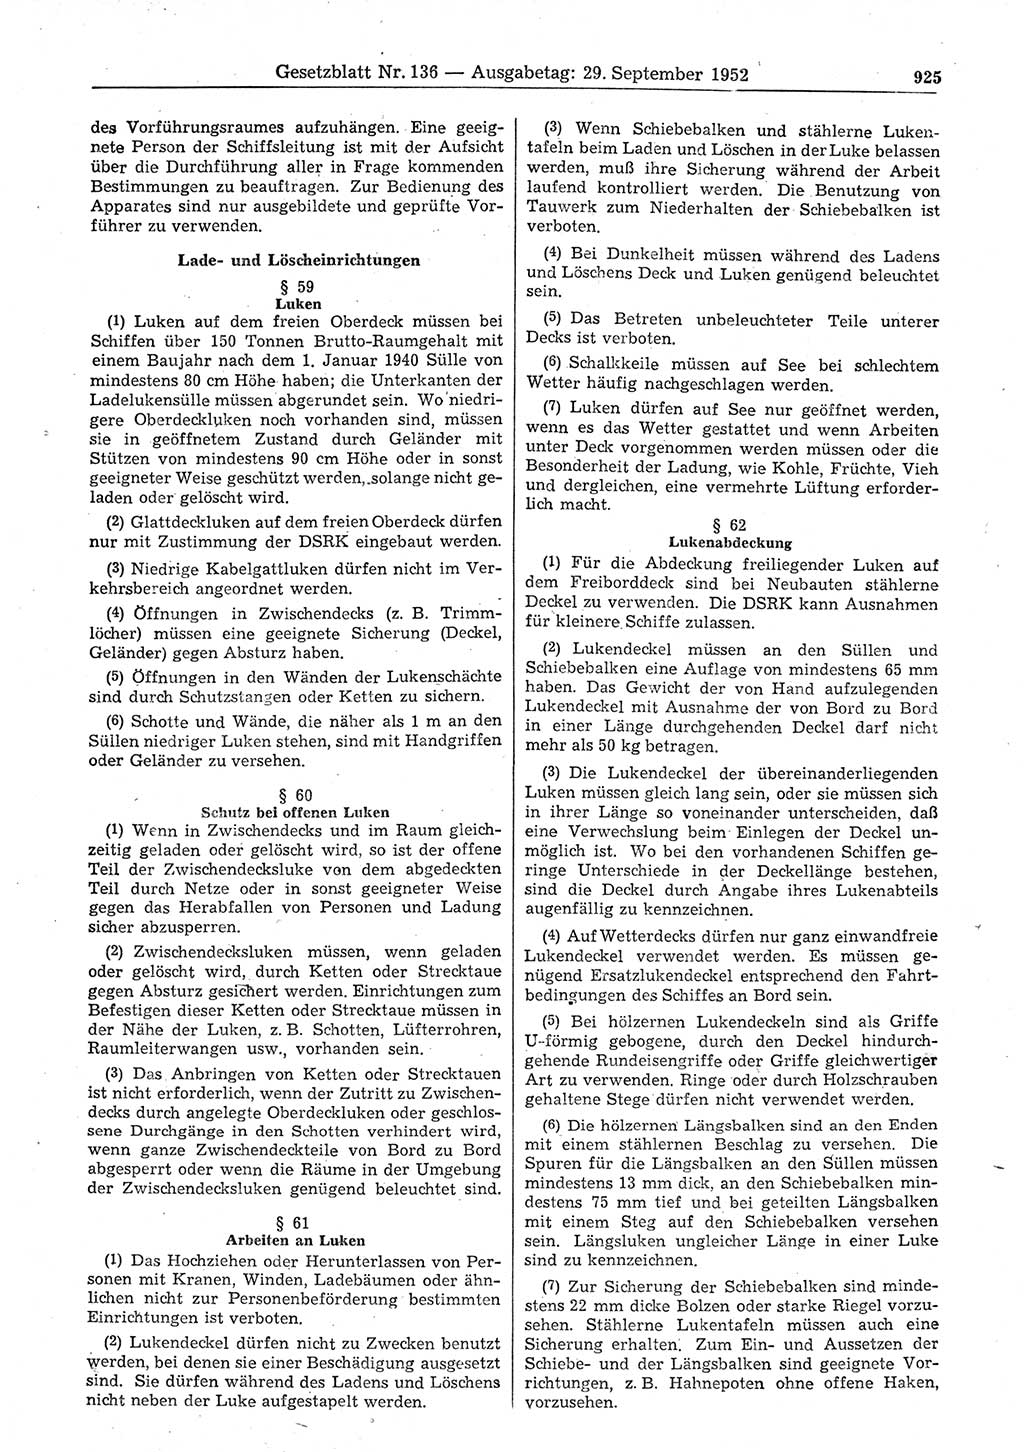 Gesetzblatt (GBl.) der Deutschen Demokratischen Republik (DDR) 1952, Seite 925 (GBl. DDR 1952, S. 925)